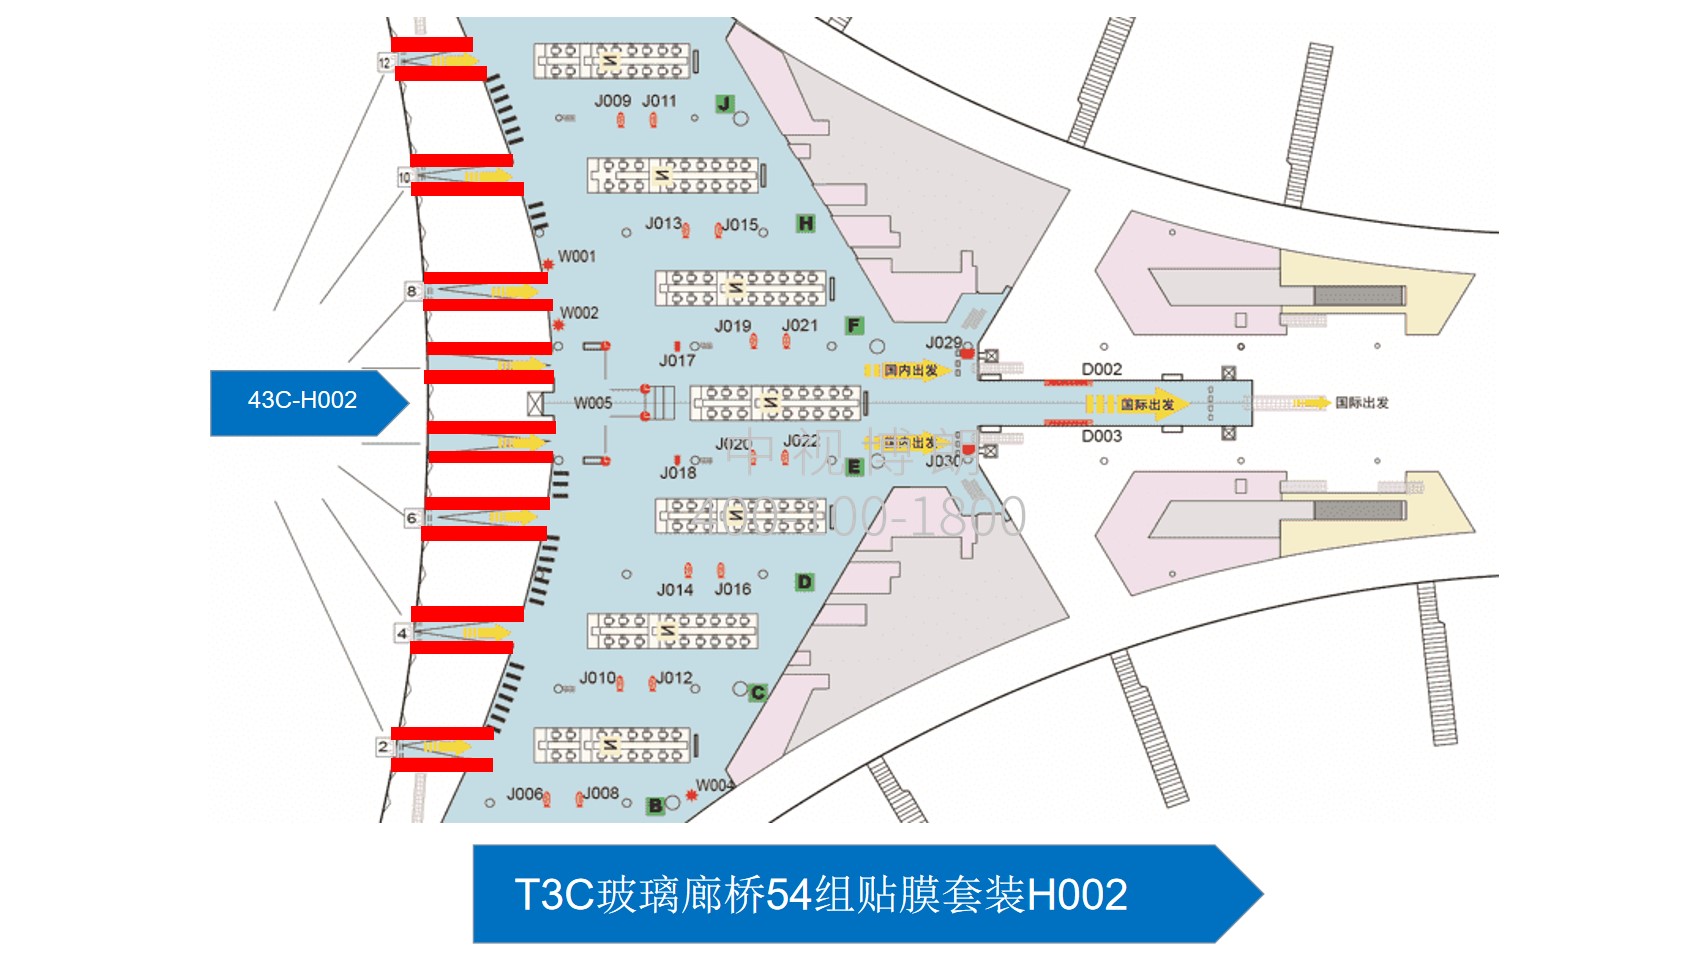 北京首都机场广告-T3C玻璃廊桥贴膜套装H002位置图